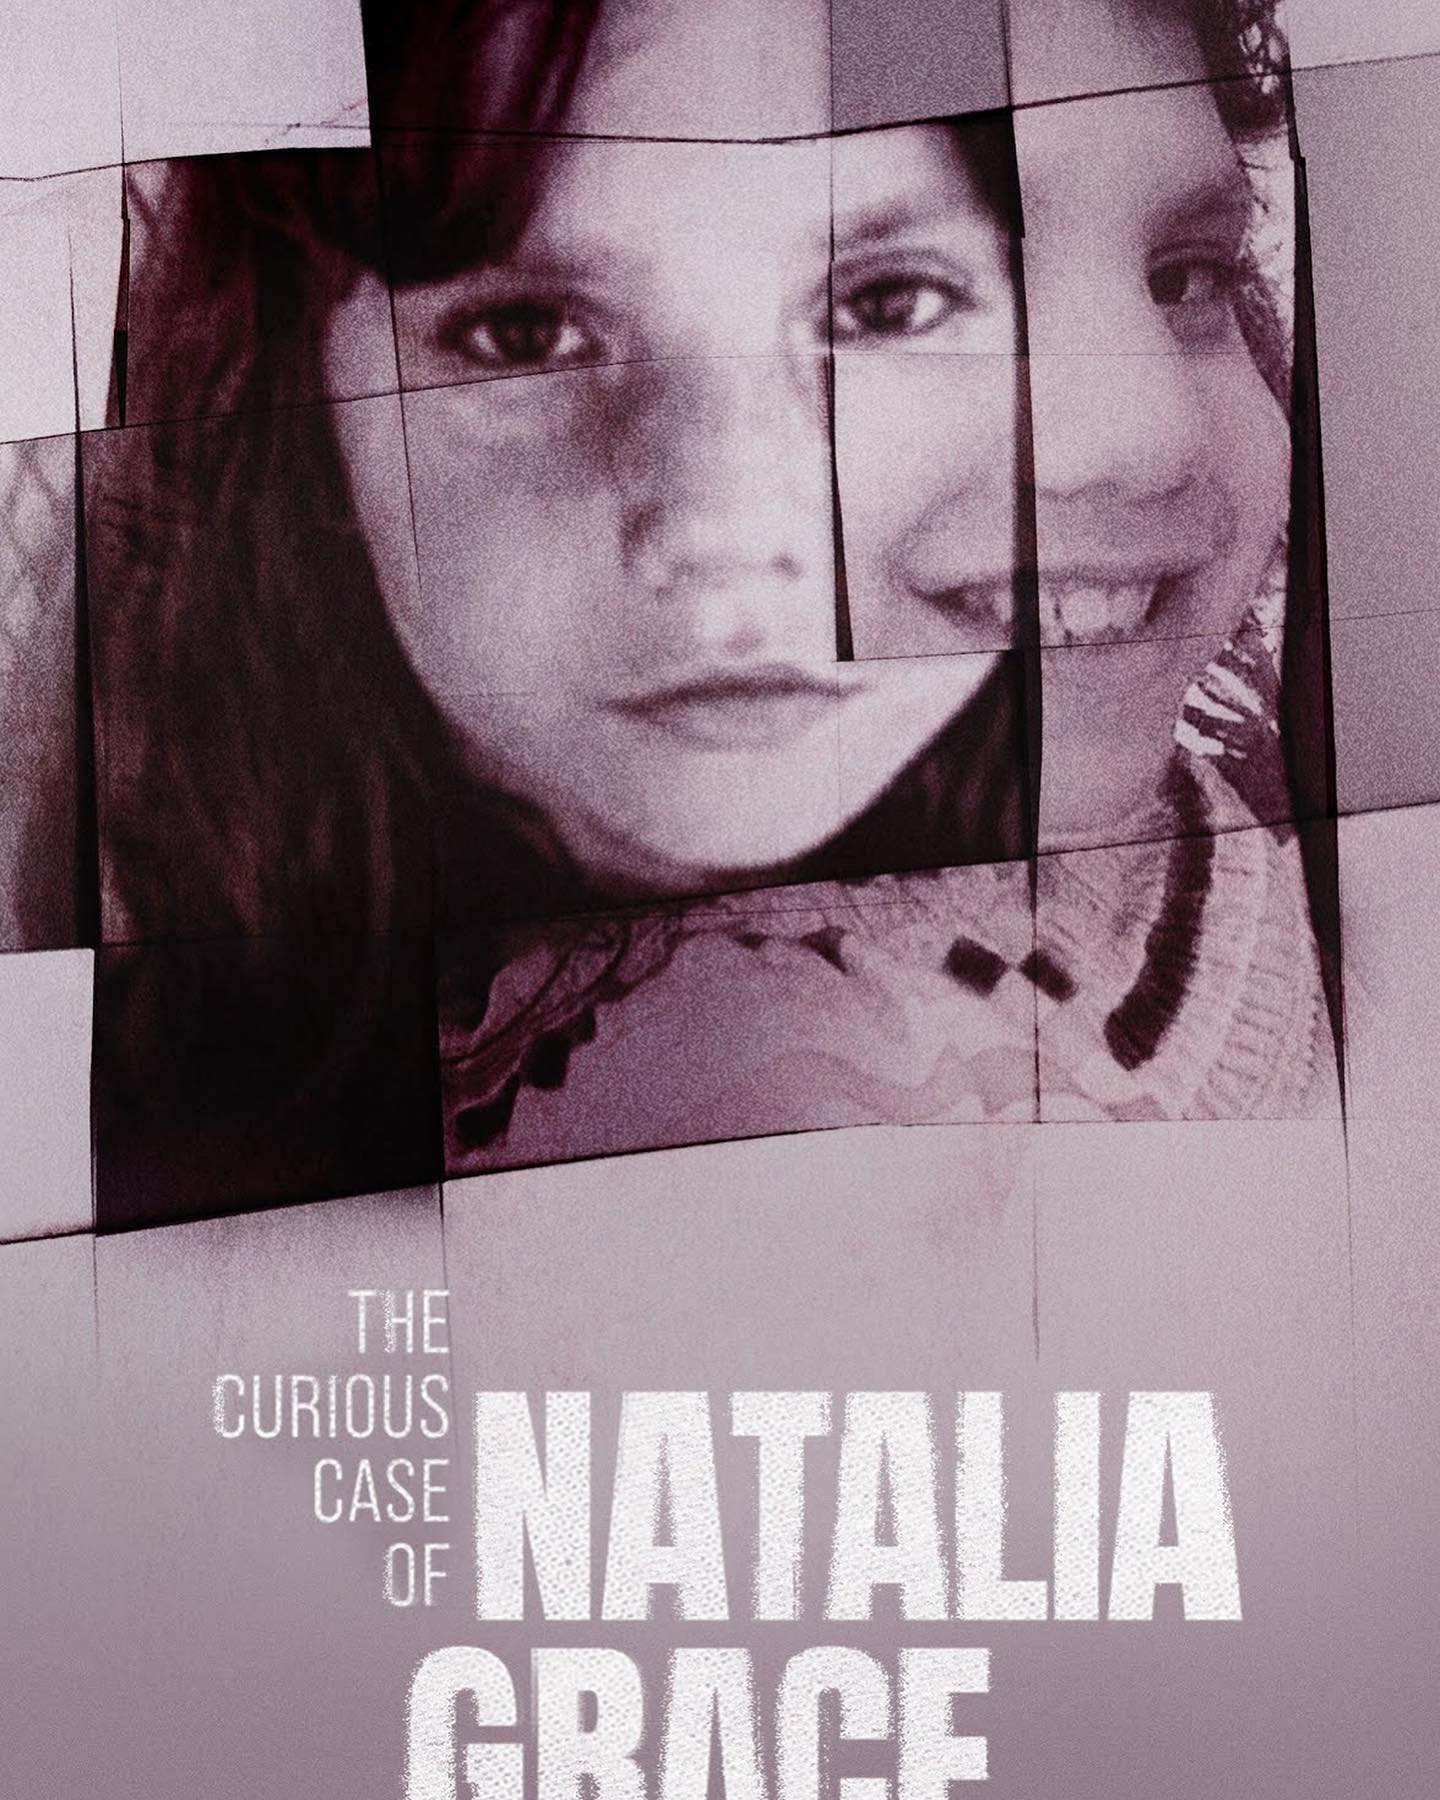 Natalia Grace Barnett Documentary Netflix